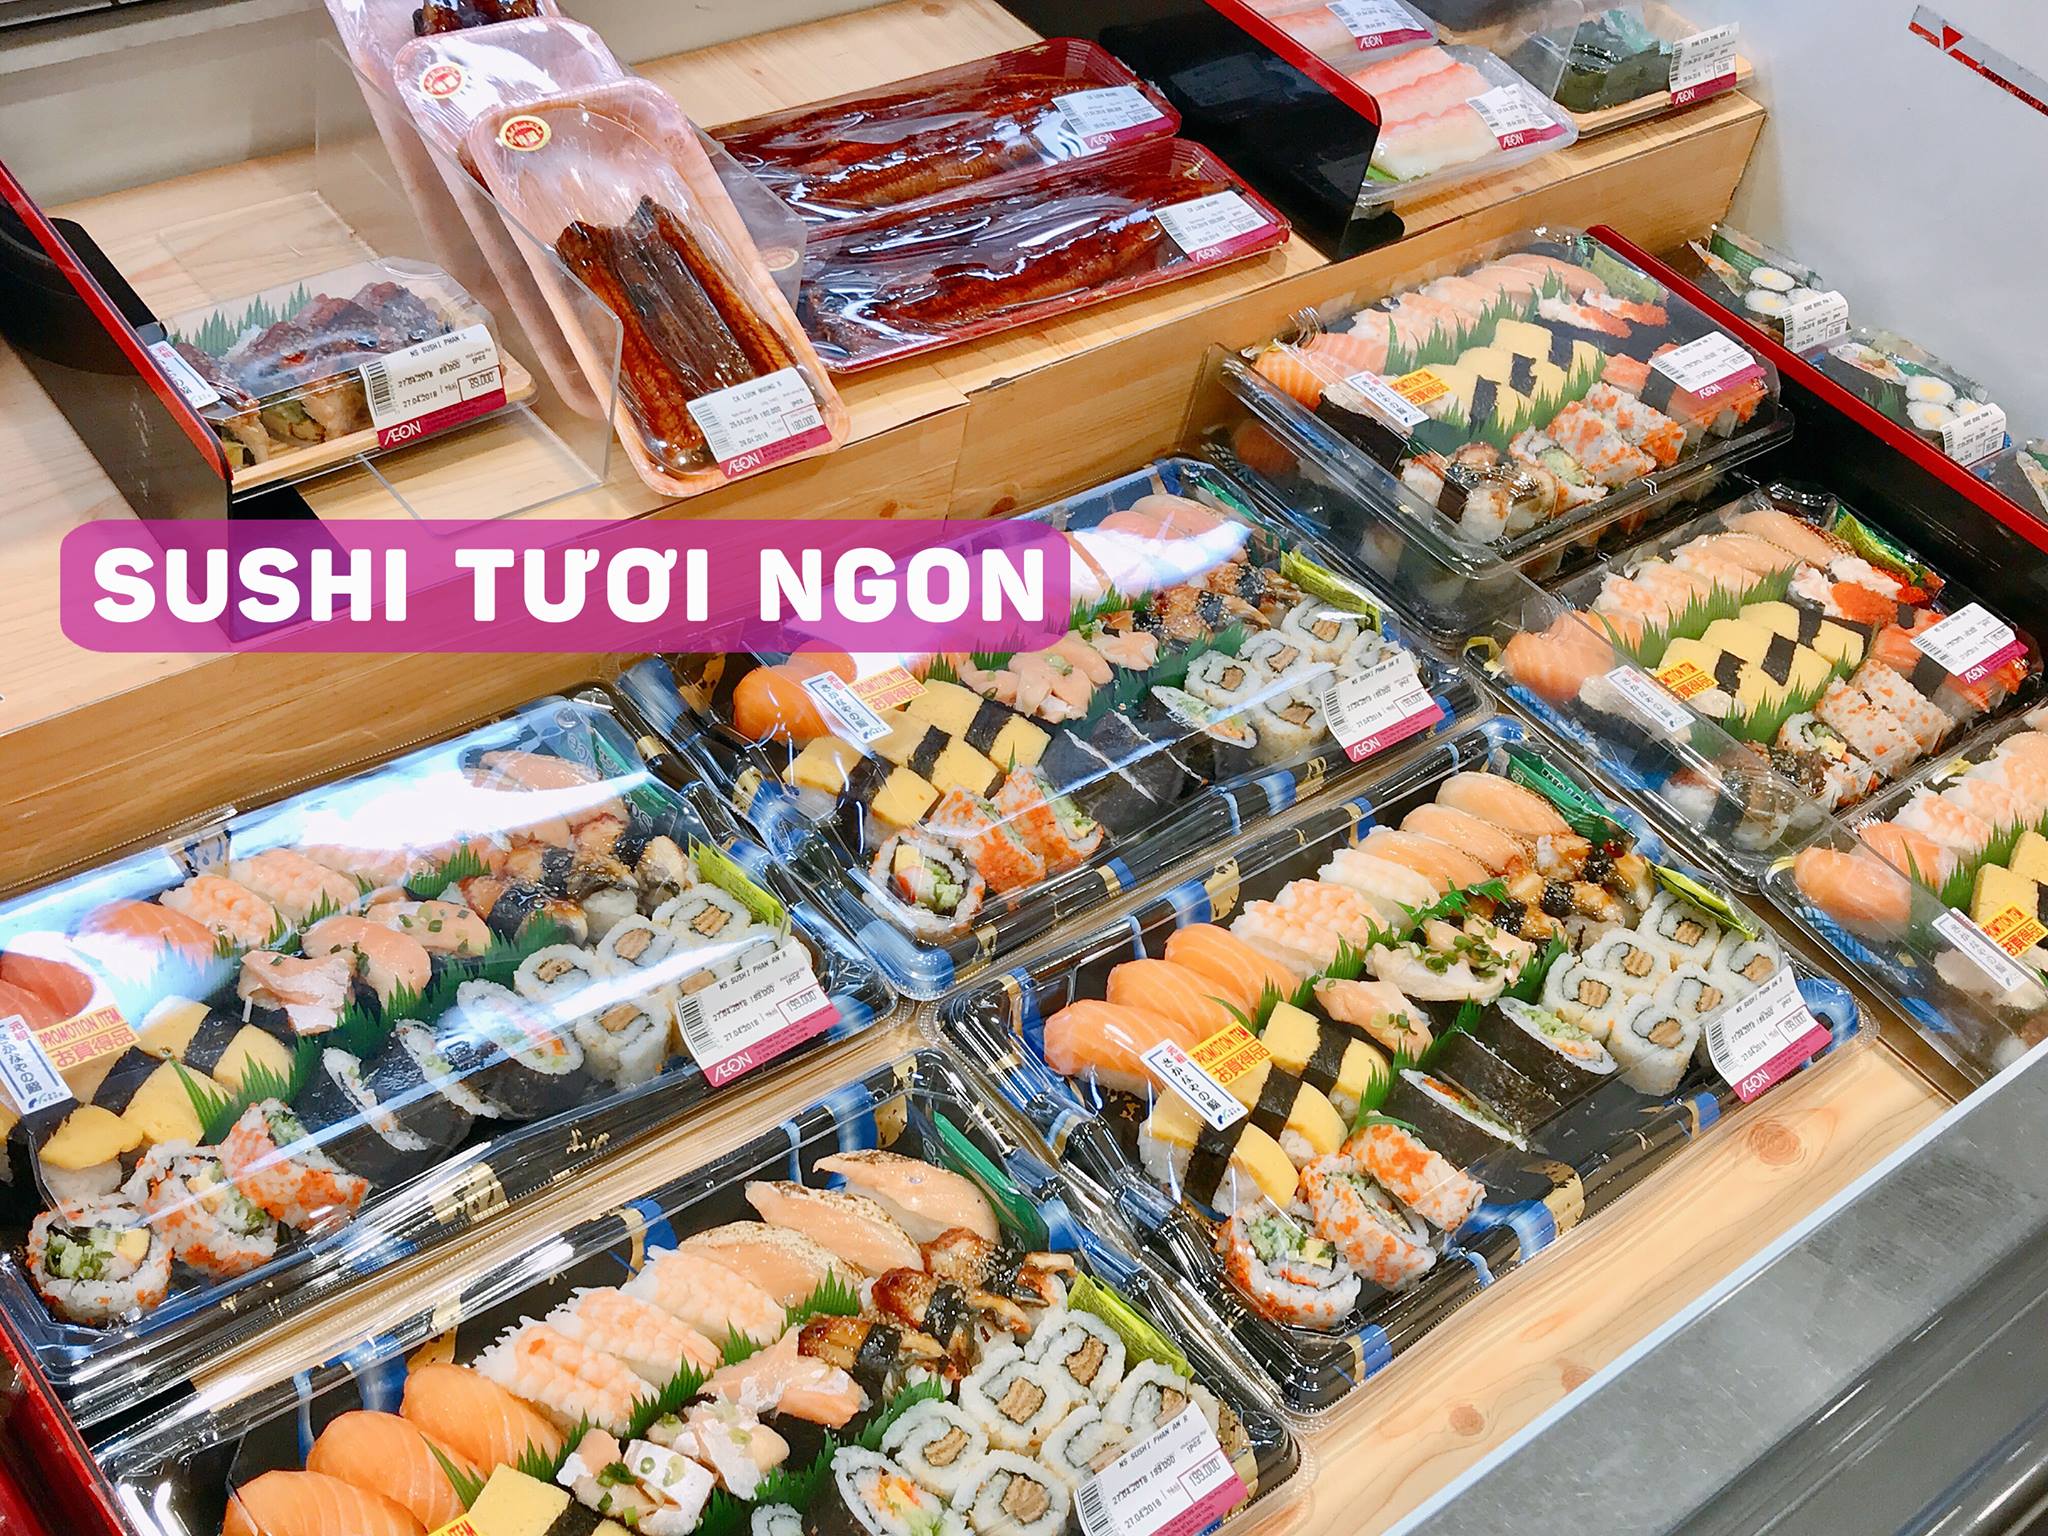 Sushi AEON là sự lựa chọn hoàn hảo cho những ai muốn trải nghiệm những cuốn sushi tươi ngon với chi phí tiết kiệm